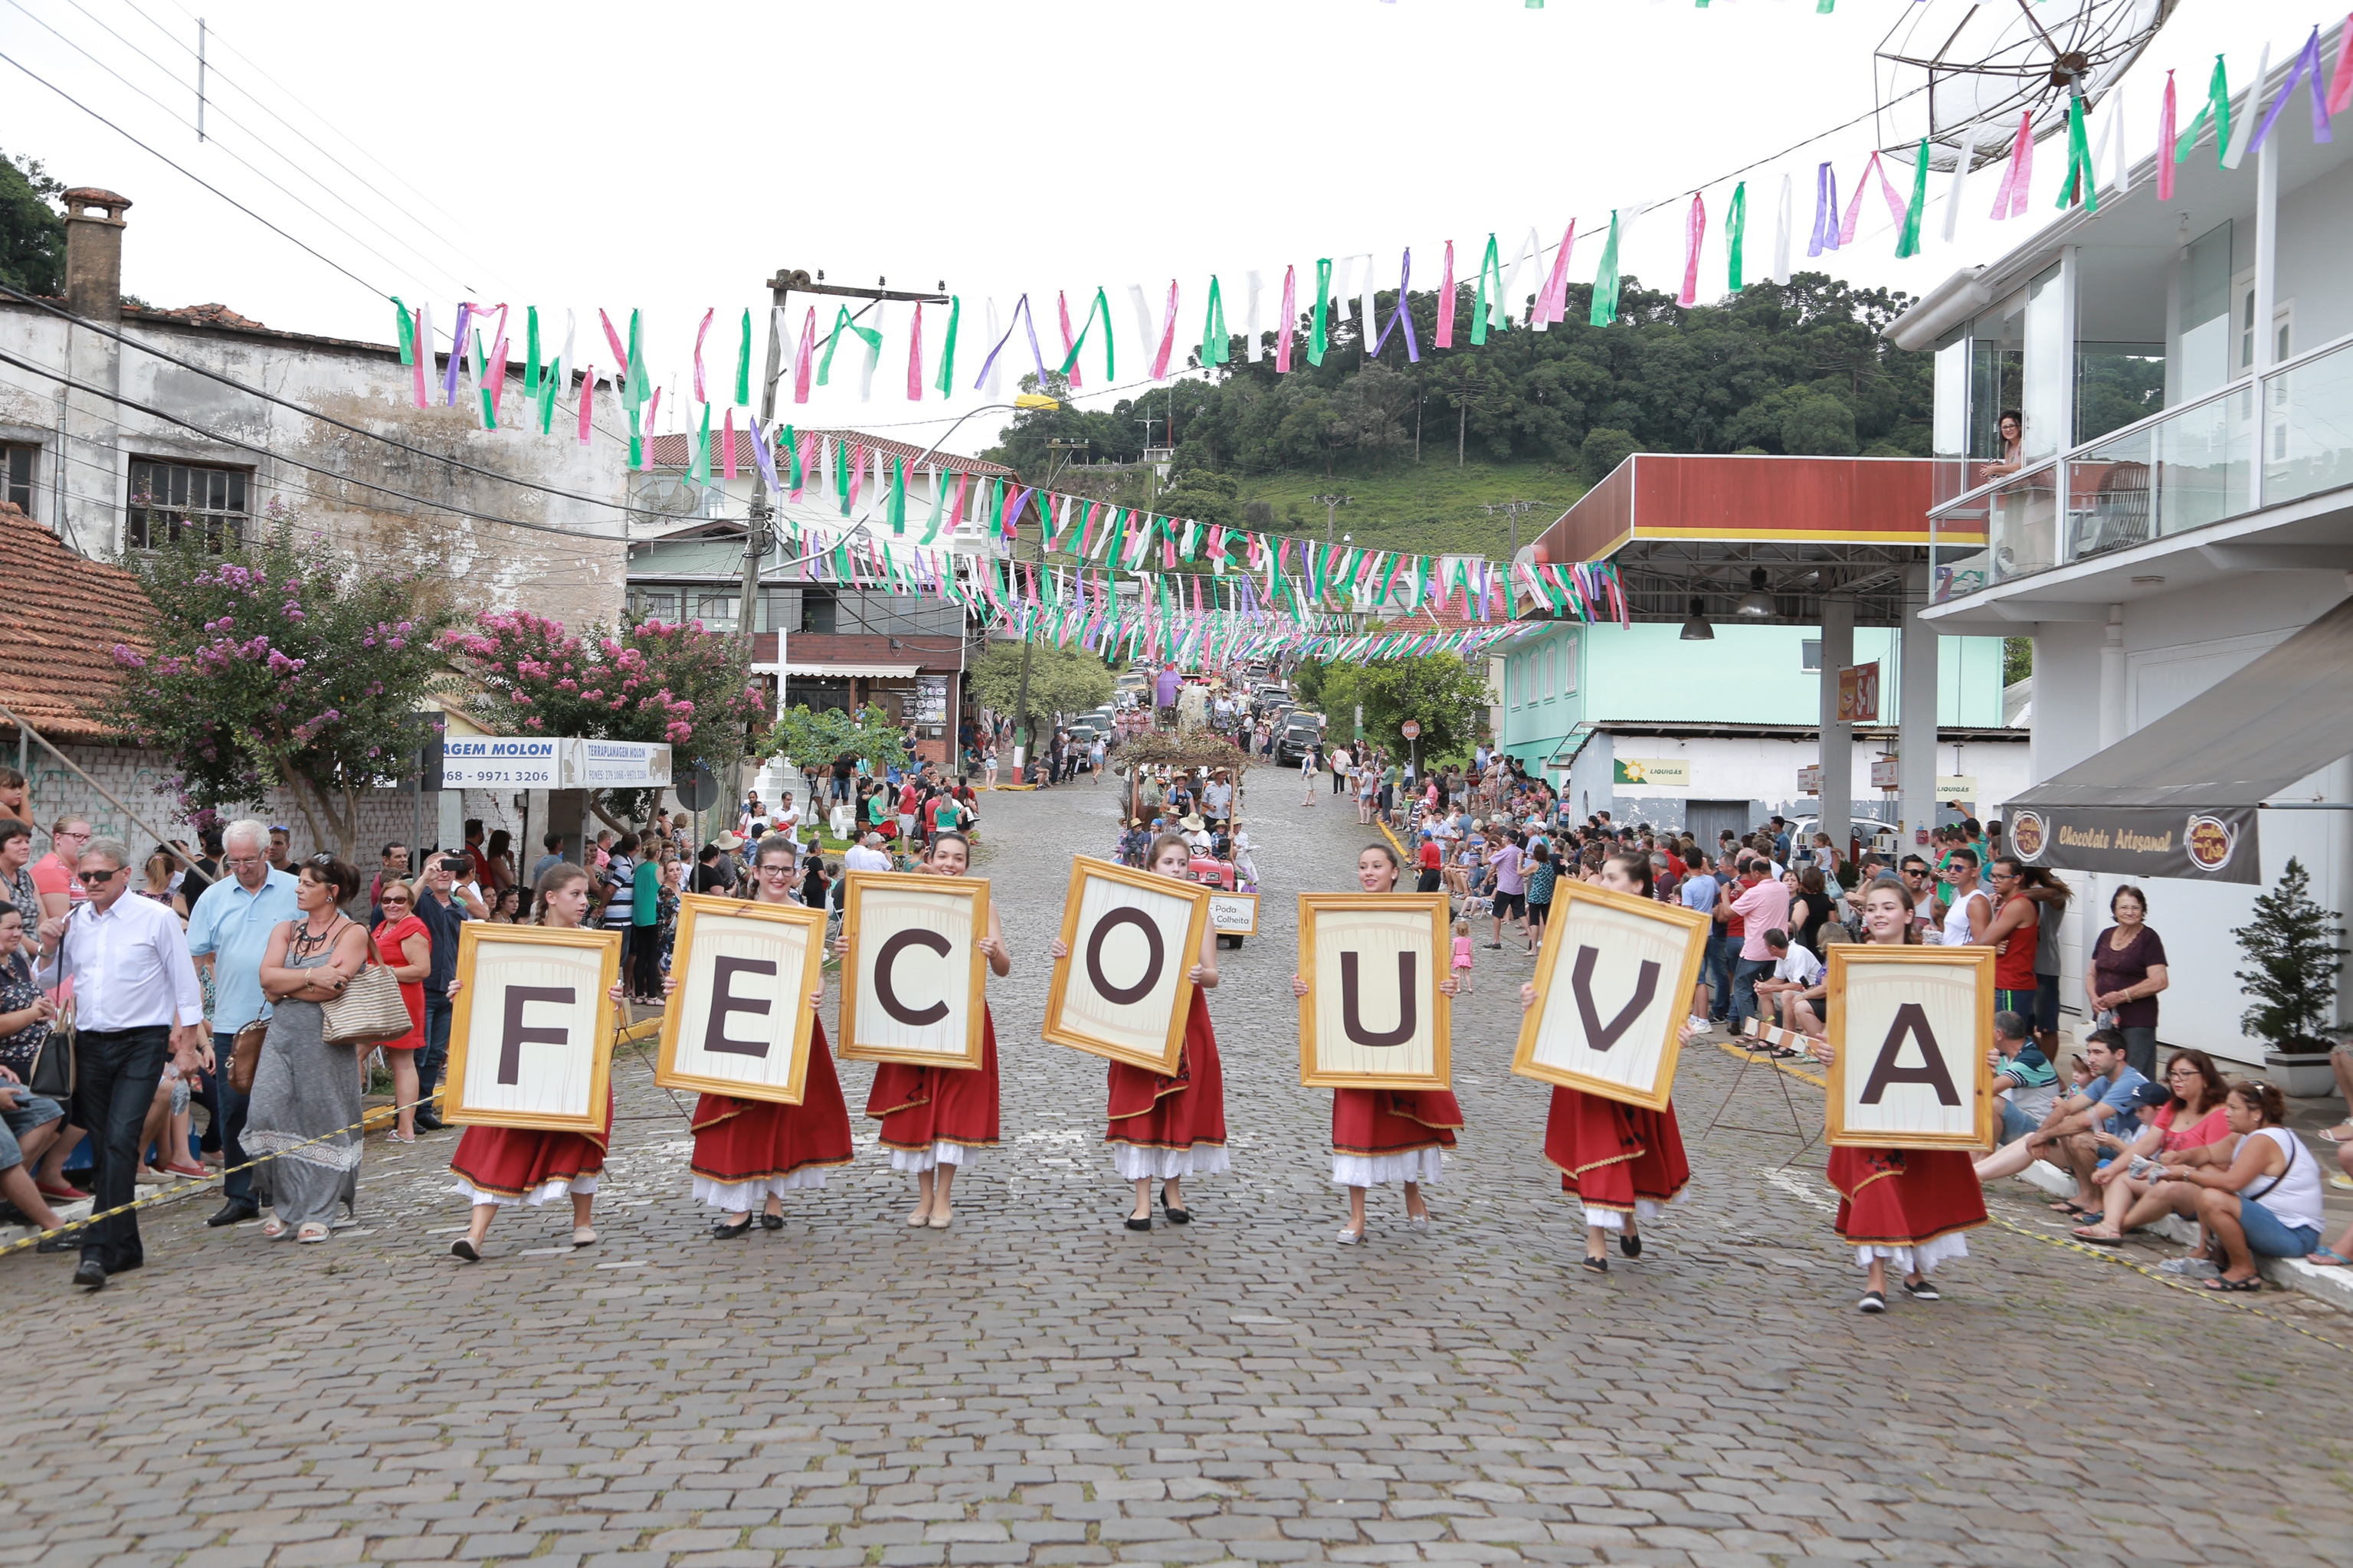 Milhares de pessoas apreciaram o desfile de carros alegóricos na 13ª Fecouva, em 2017. - Airton Nery/ Divulgação